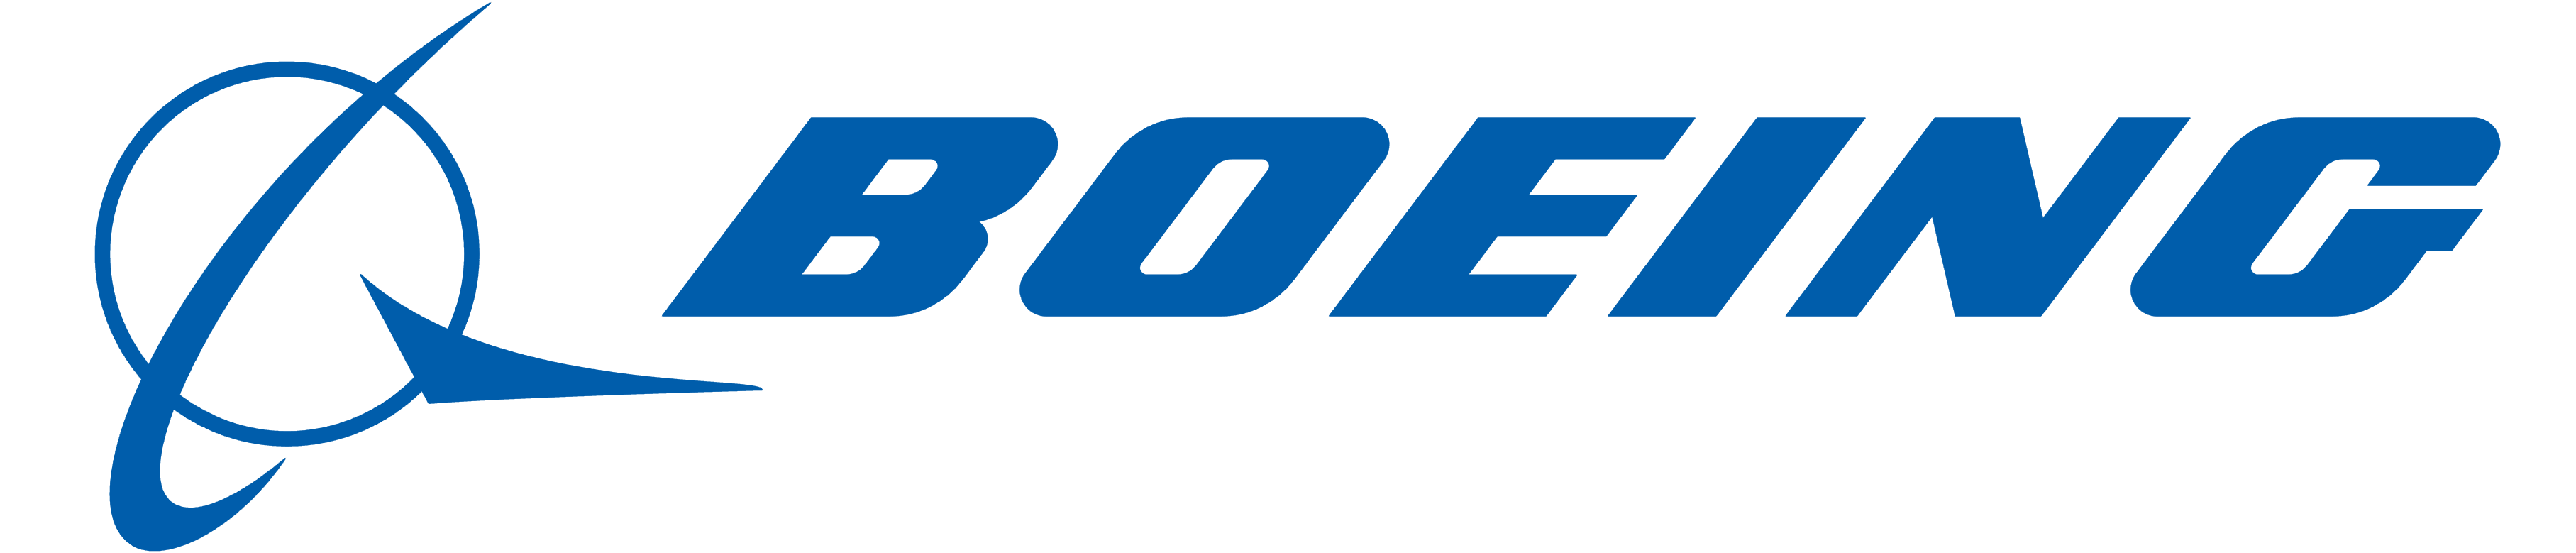 Boeing logo, logotype